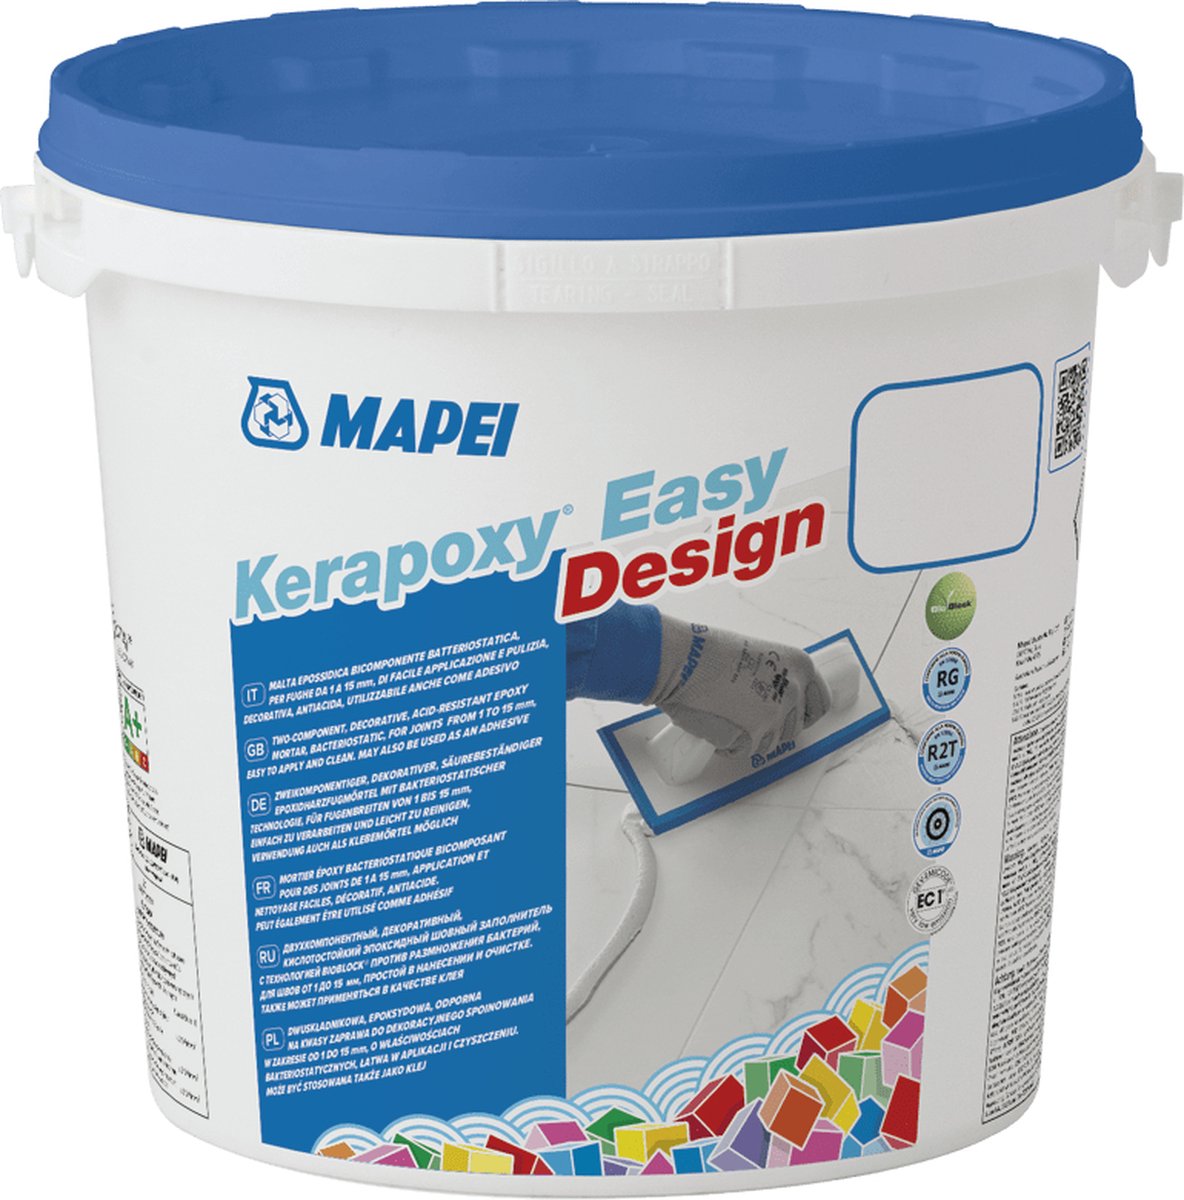 Mapei Kerapoxy Easy Design Voegmortel - Voor Keramische Tegels & Natuursteen - Kleur 120 Zwart - 3 kg - Mapei